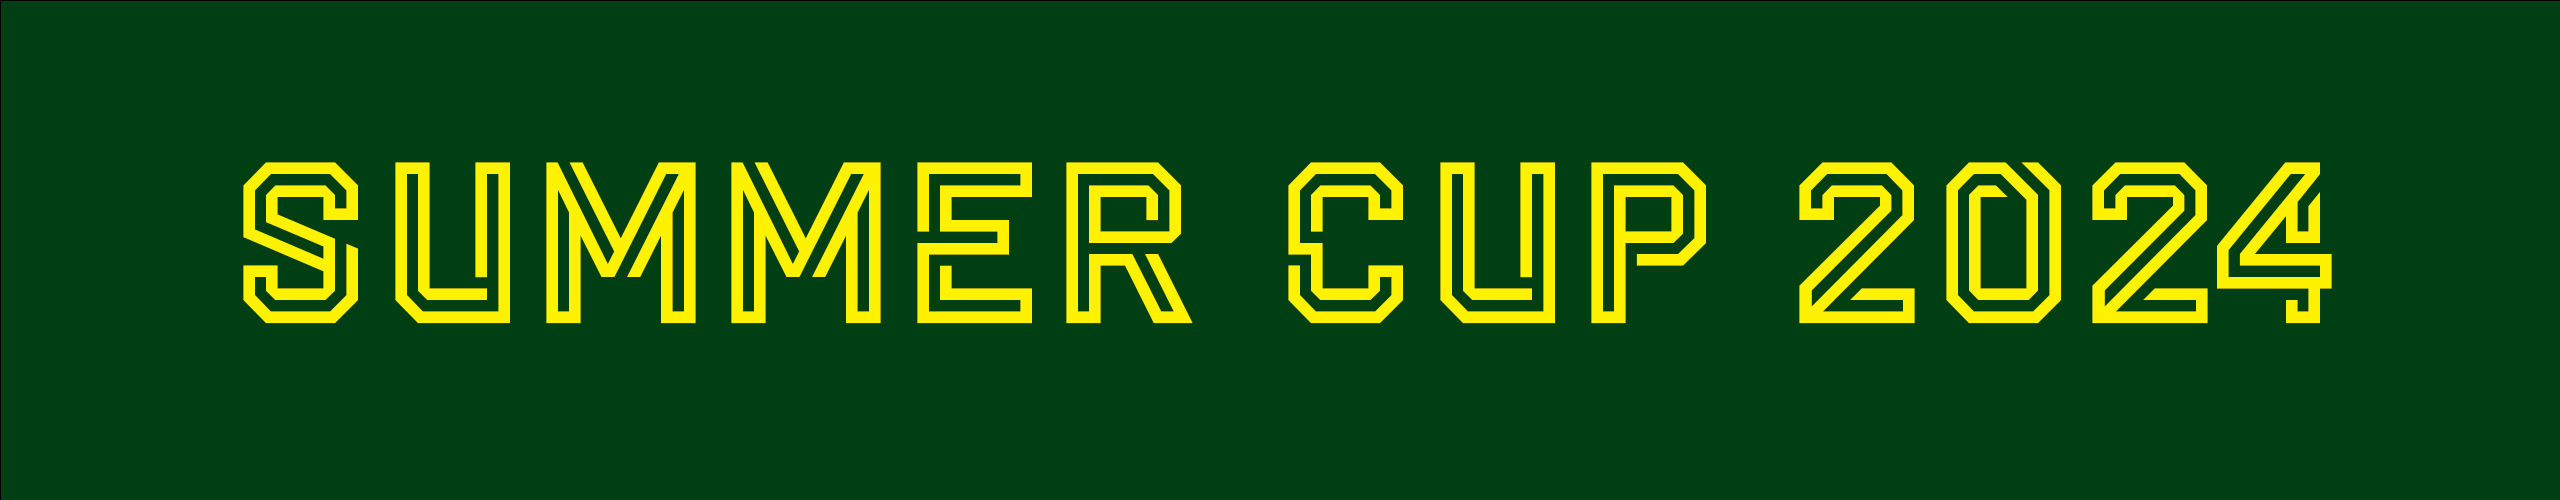 Summer Cup 2024 (Surrey) NCFC RDP Ltd